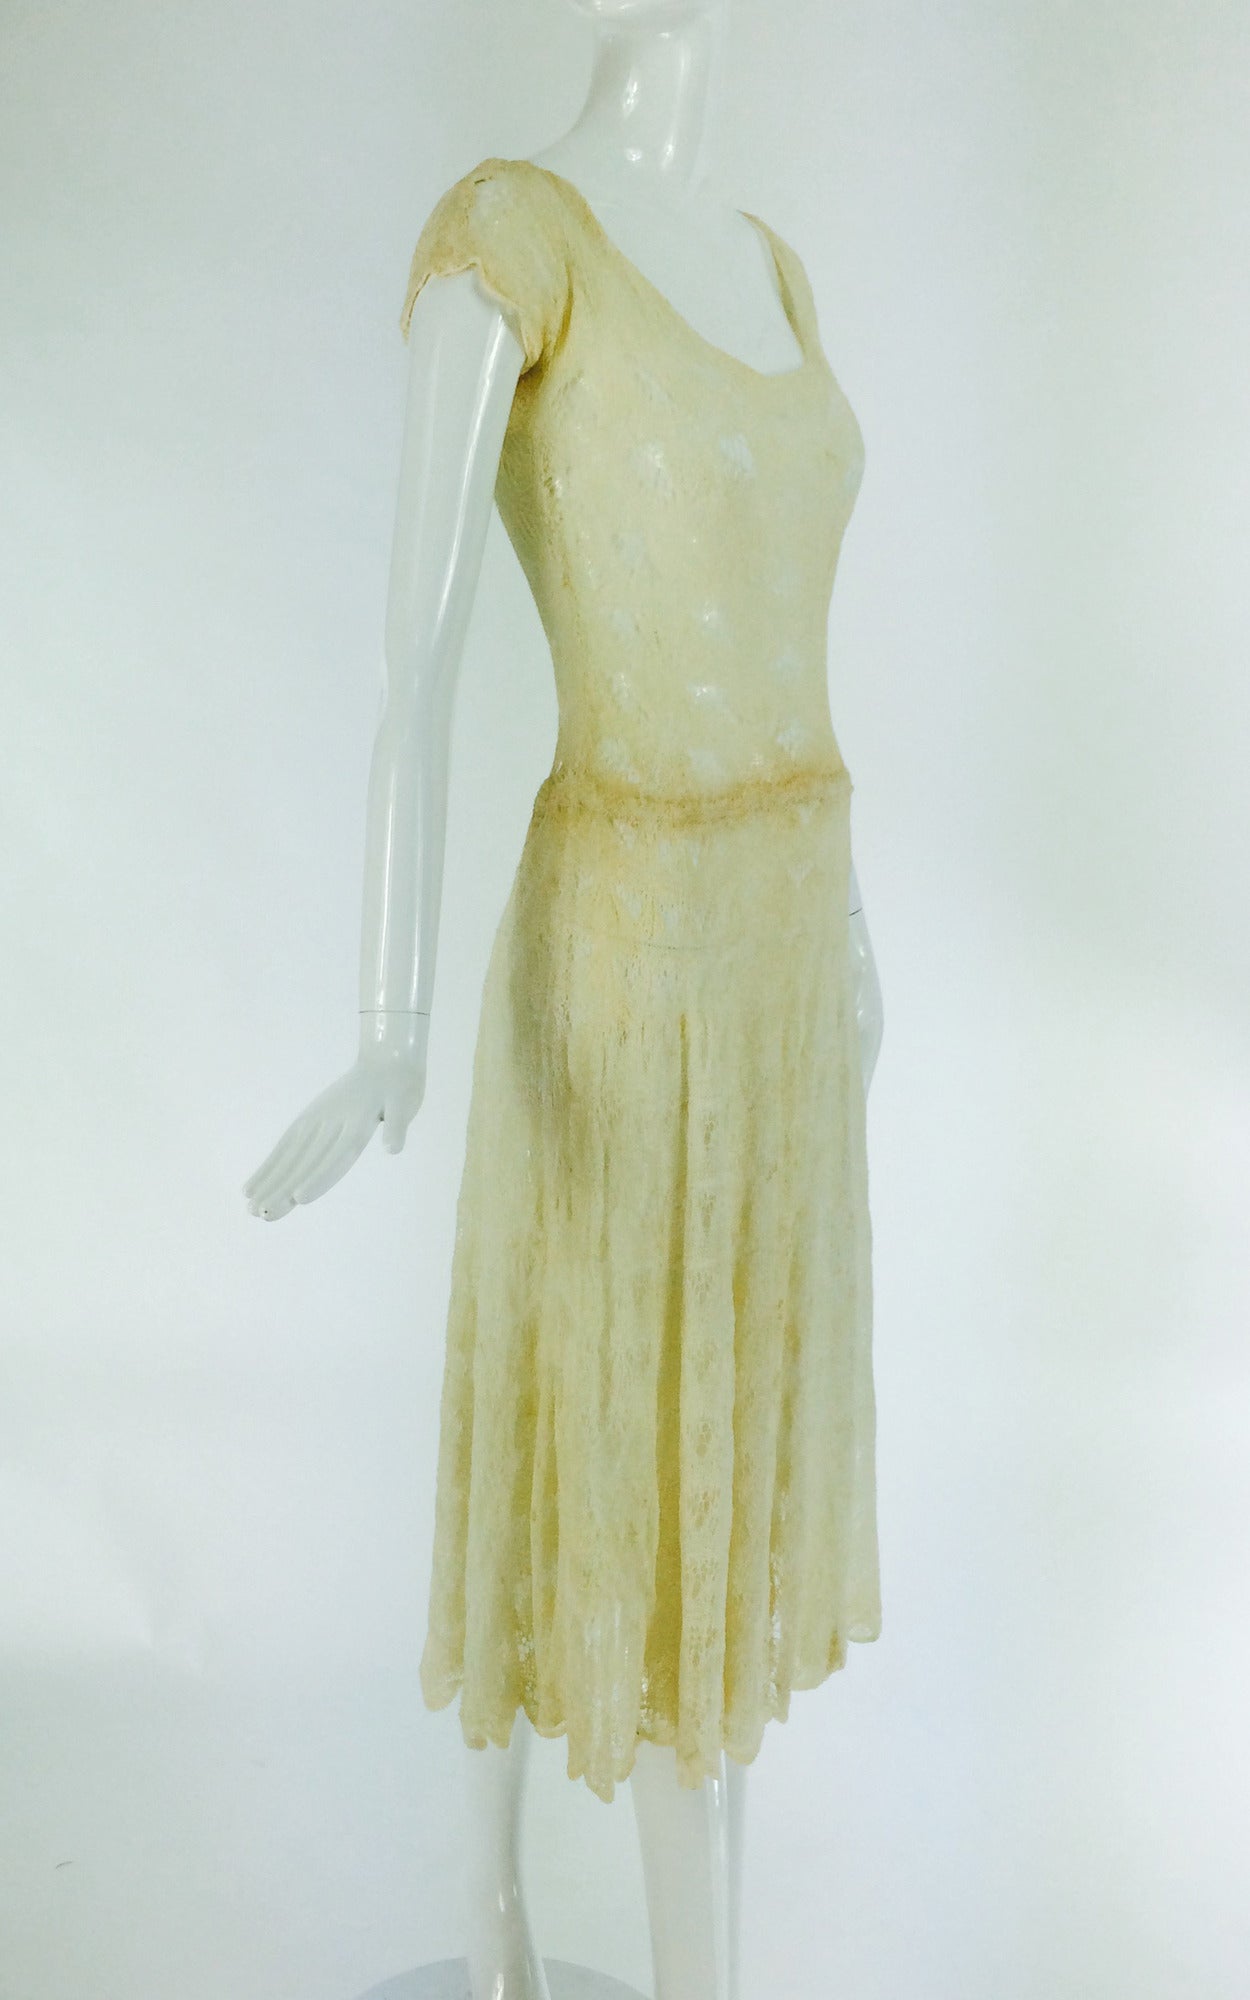 Women's 1930s Adia Woolf 20 Grosvenor St Mayfair London ivory crochet dress